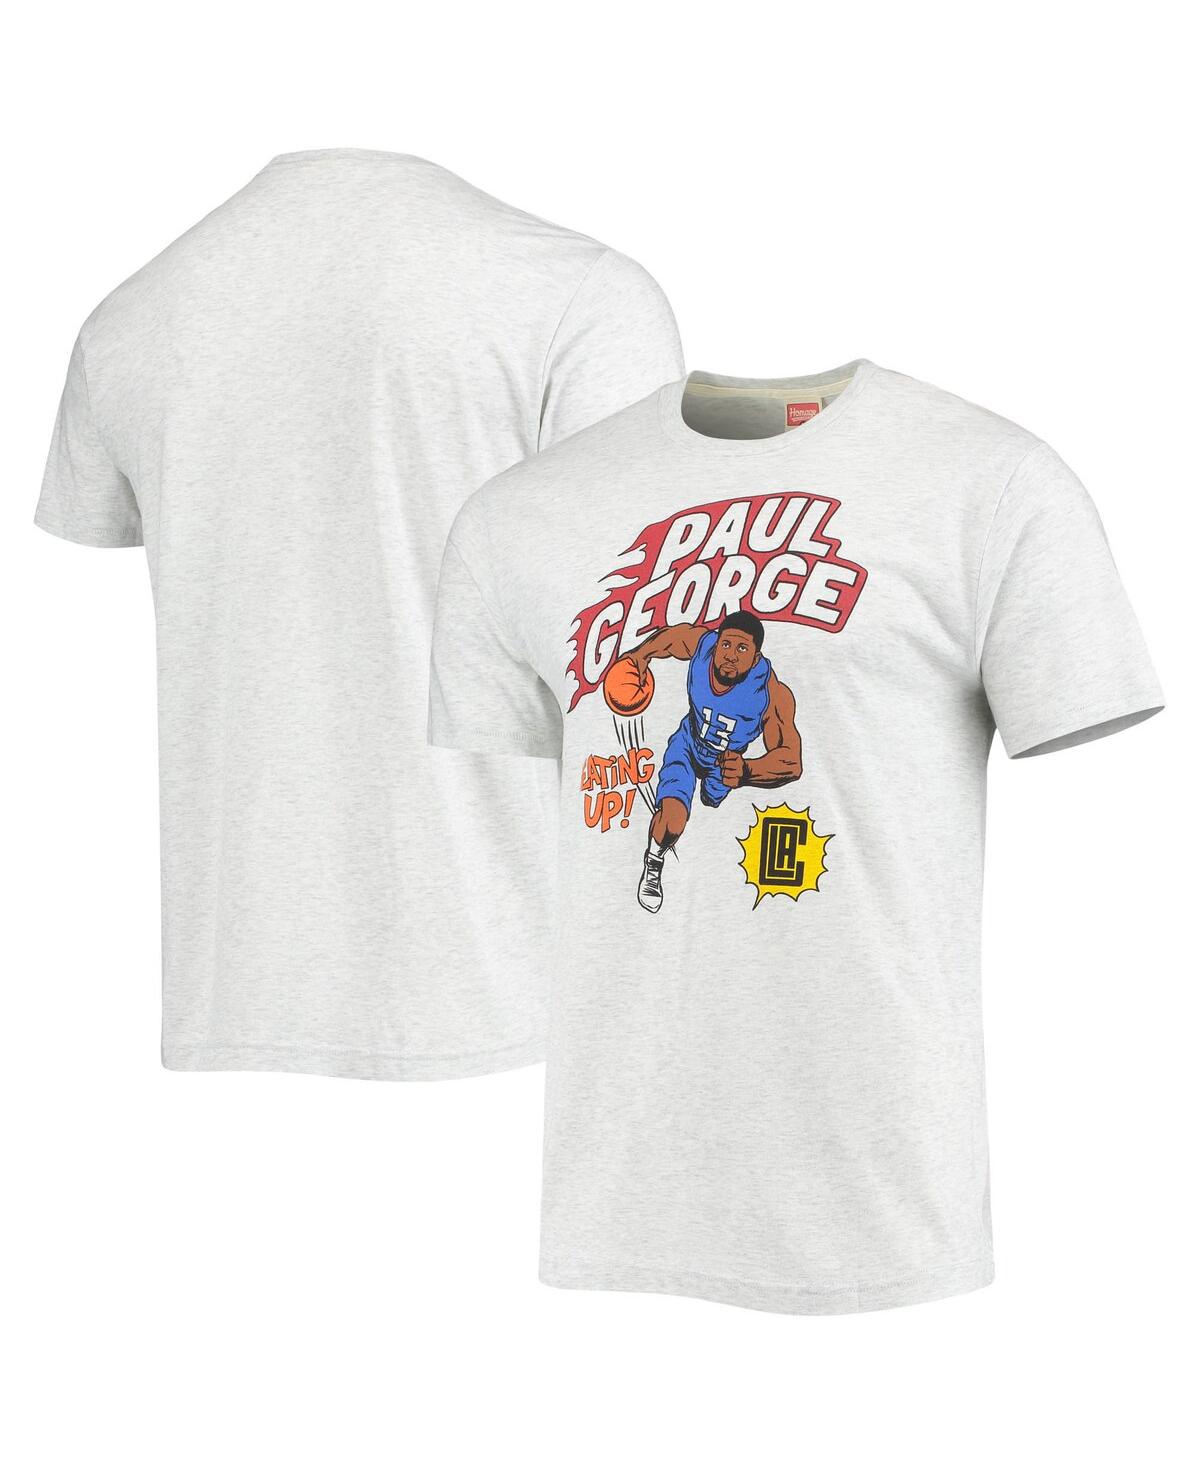 Men's Paul George Ash La Clippers Comic Book Player Tri-Blend T-shirt - Ash